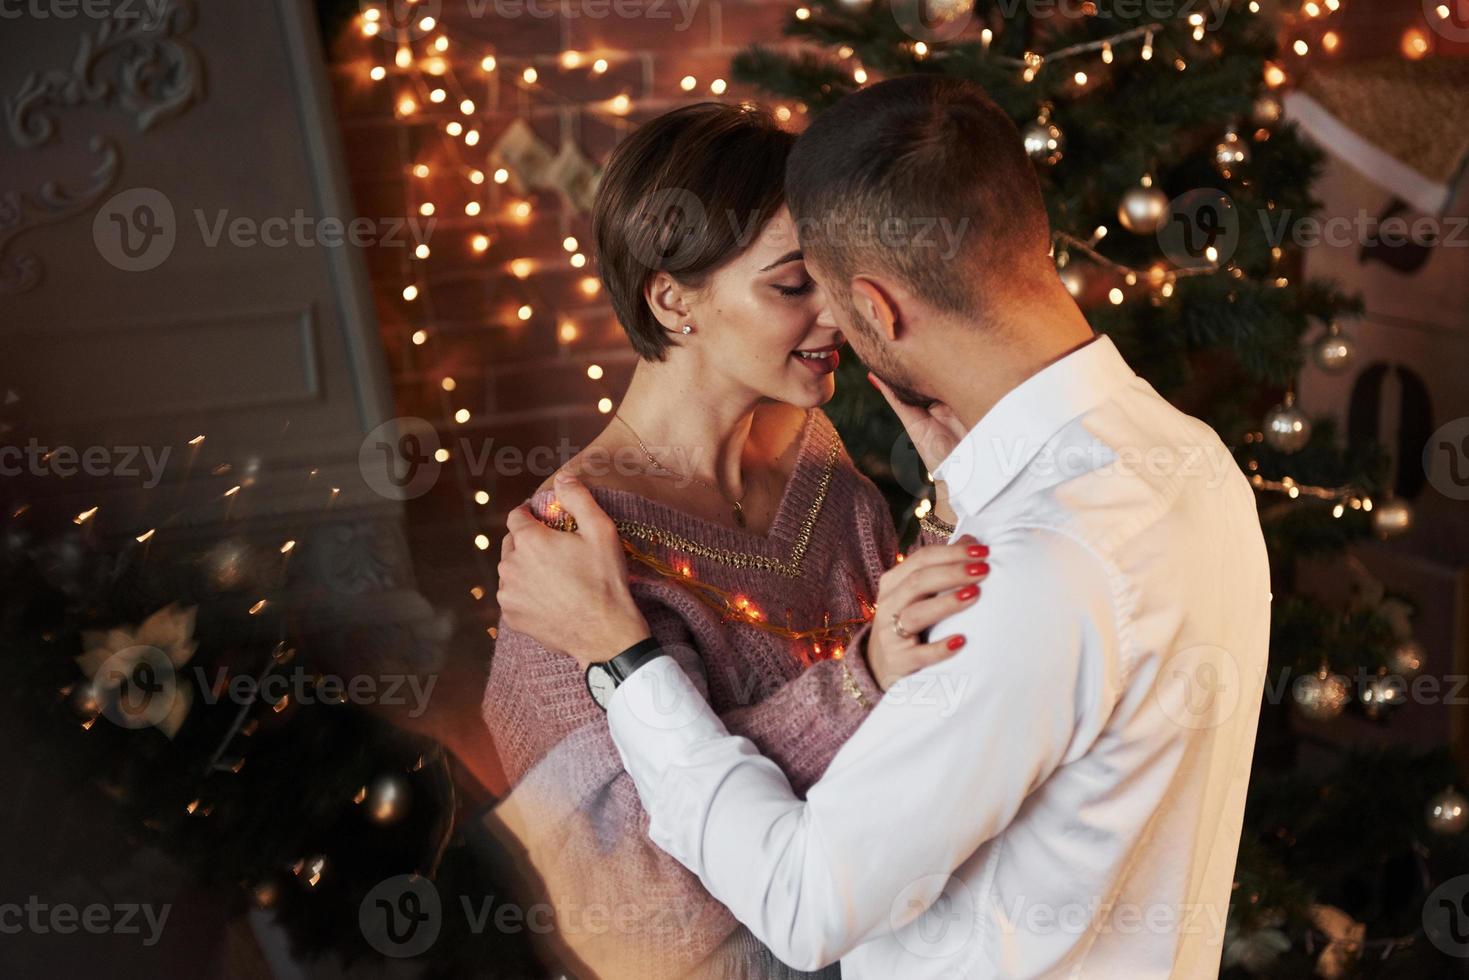 reflexo da árvore de natal. proximidade do cara e da garota no luxo vestir aquela dança e flertar foto